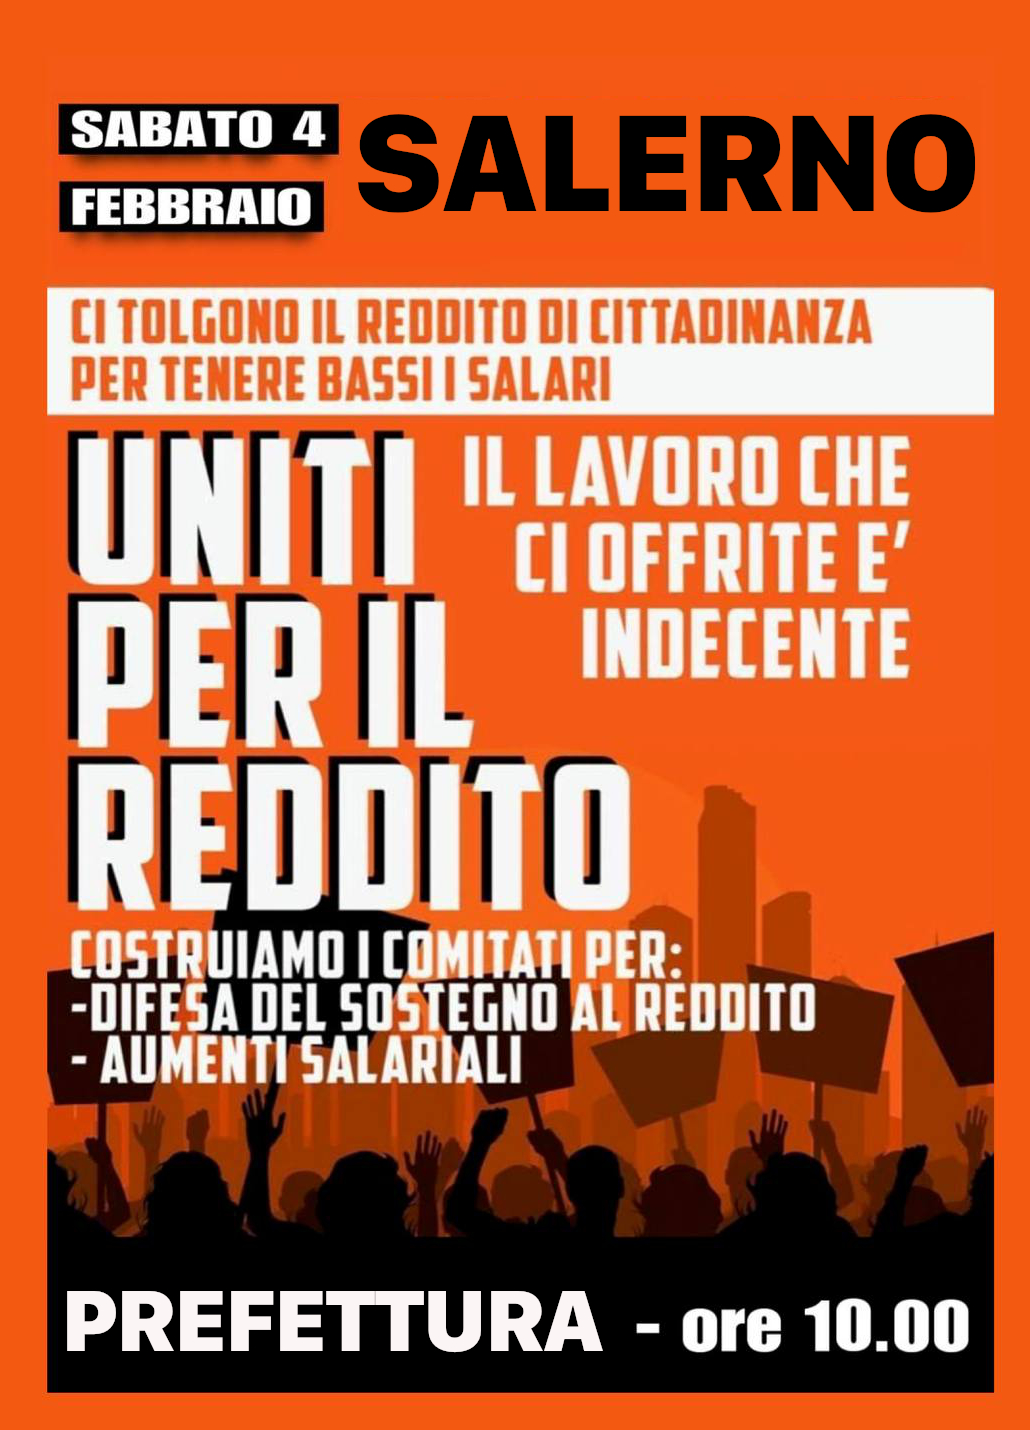 Salerno: USB, Uniti per Reddito, in piazza per RdC contro carovita